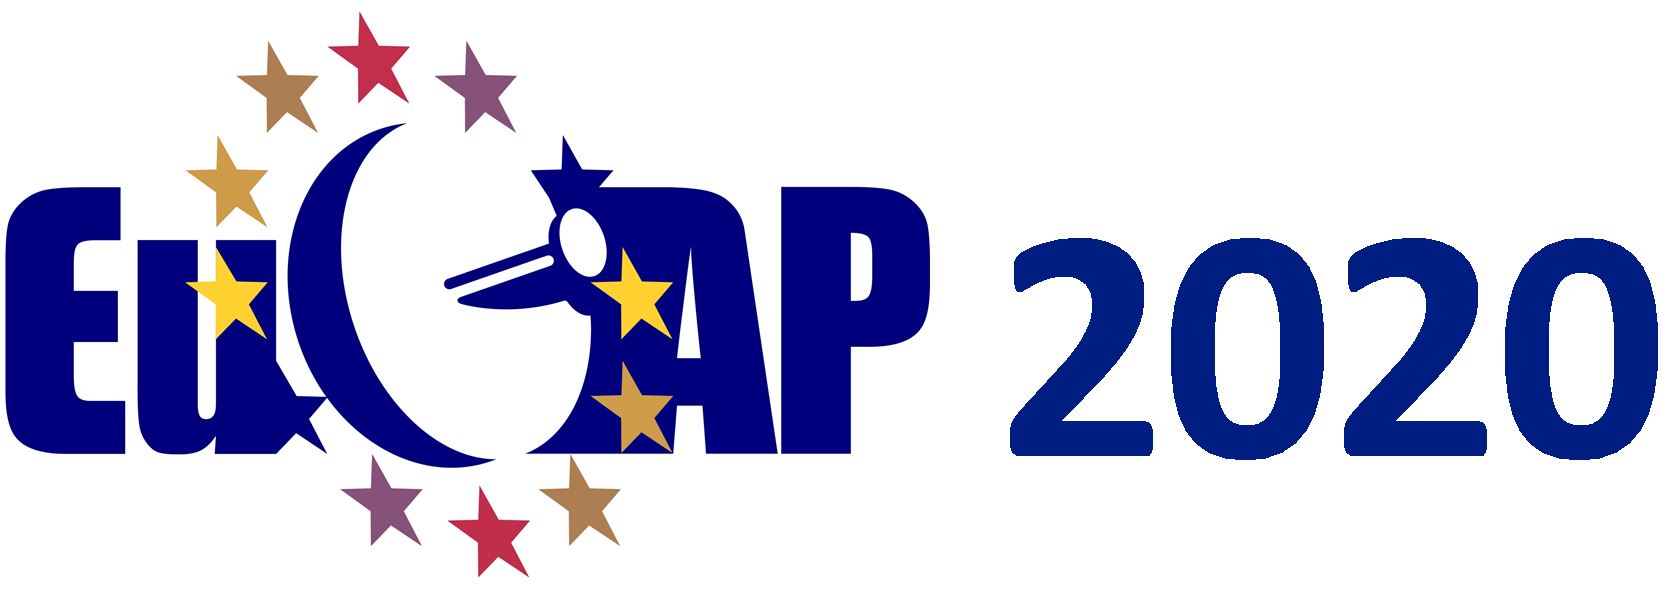 EuCAP 2020